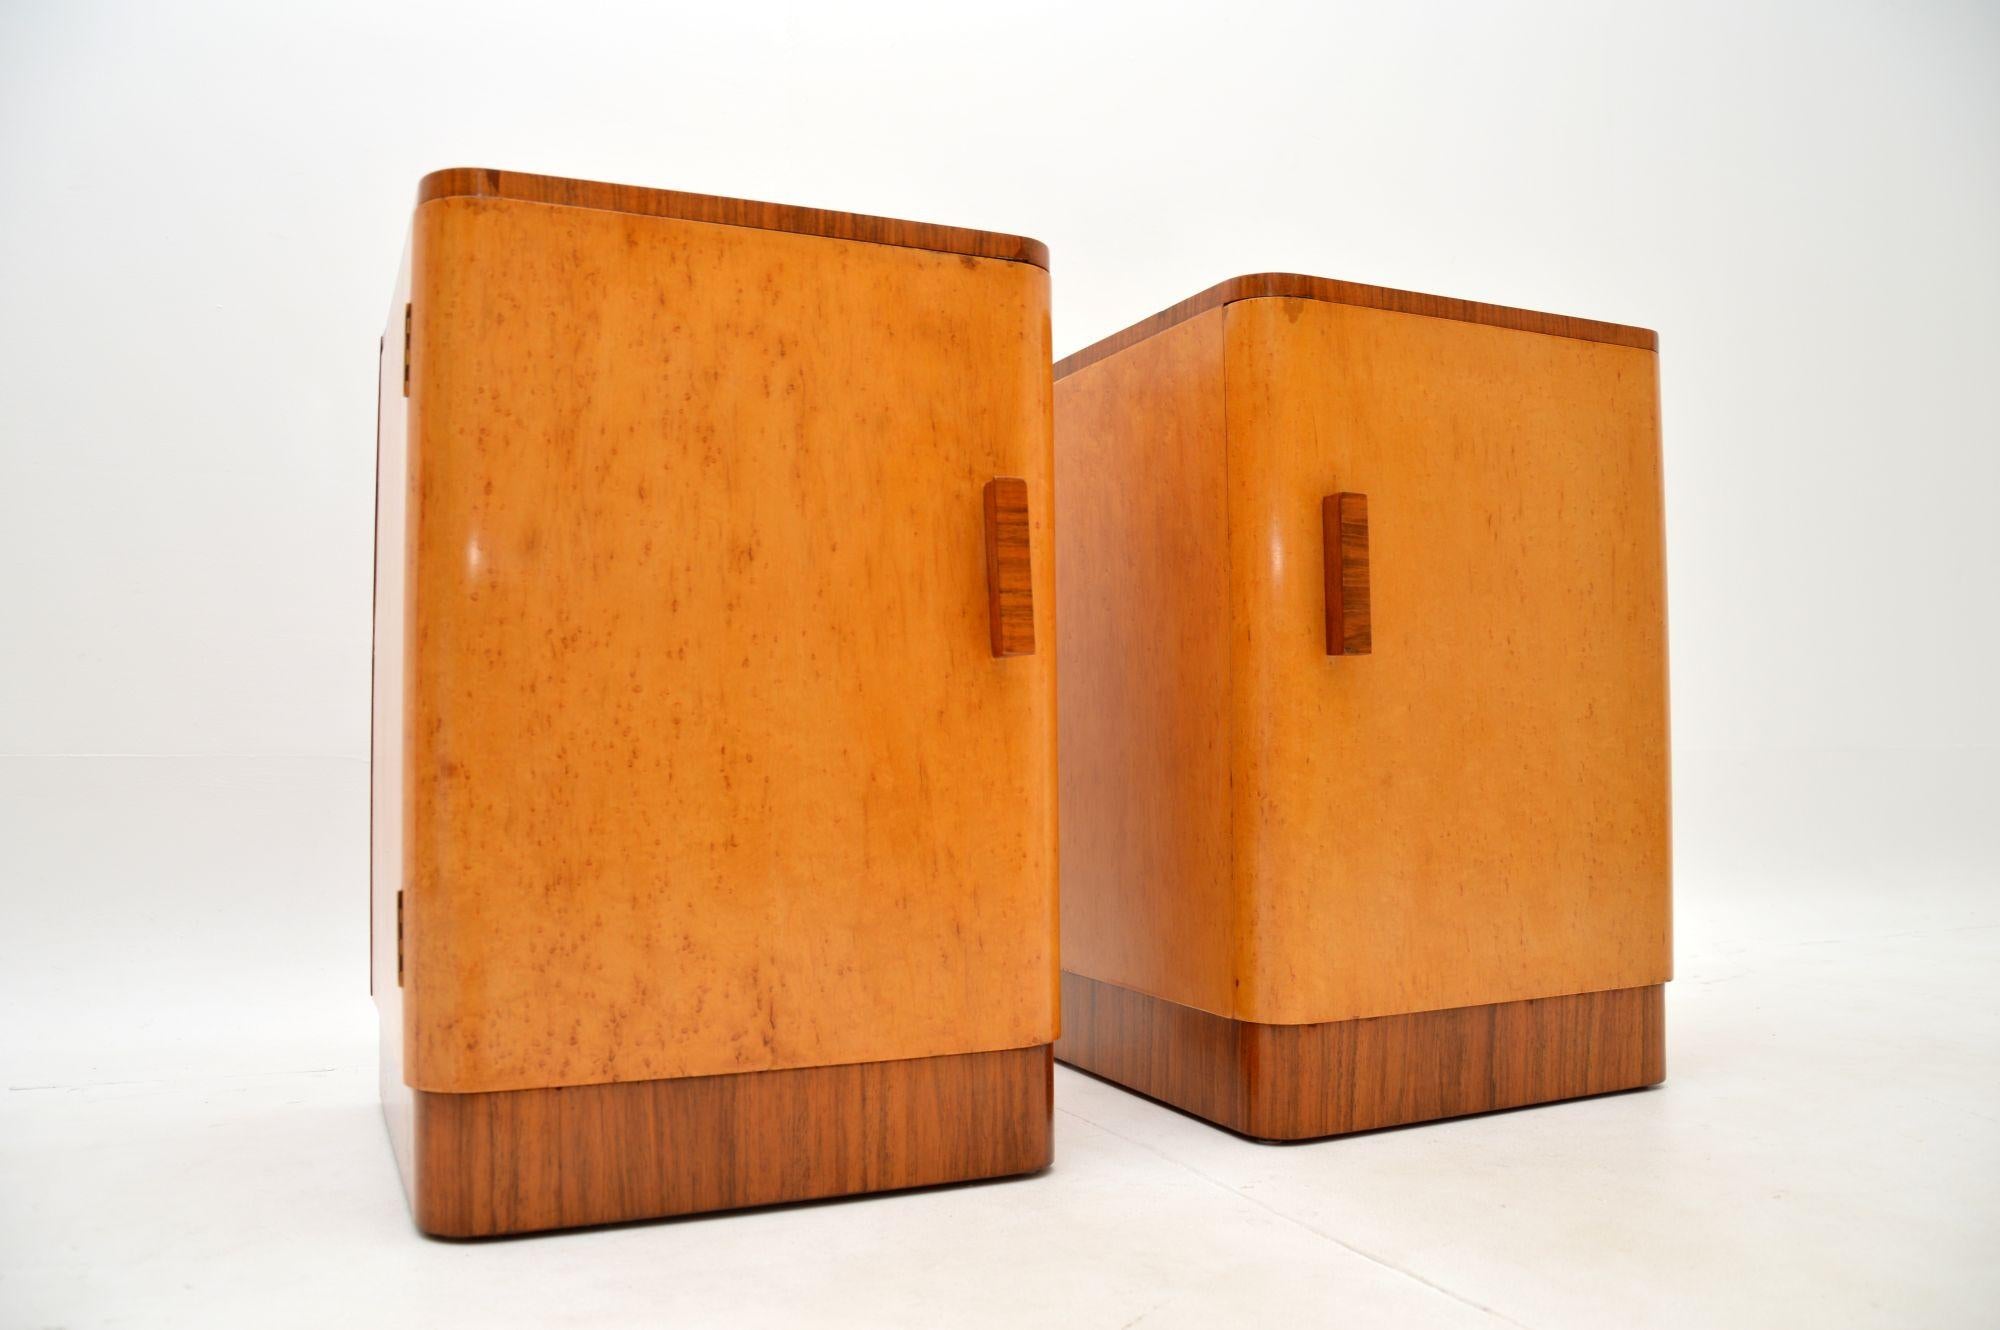 Birdseye Maple Pair of Art Deco Bedside Cabinets in Birds Eye Maple and Walnut